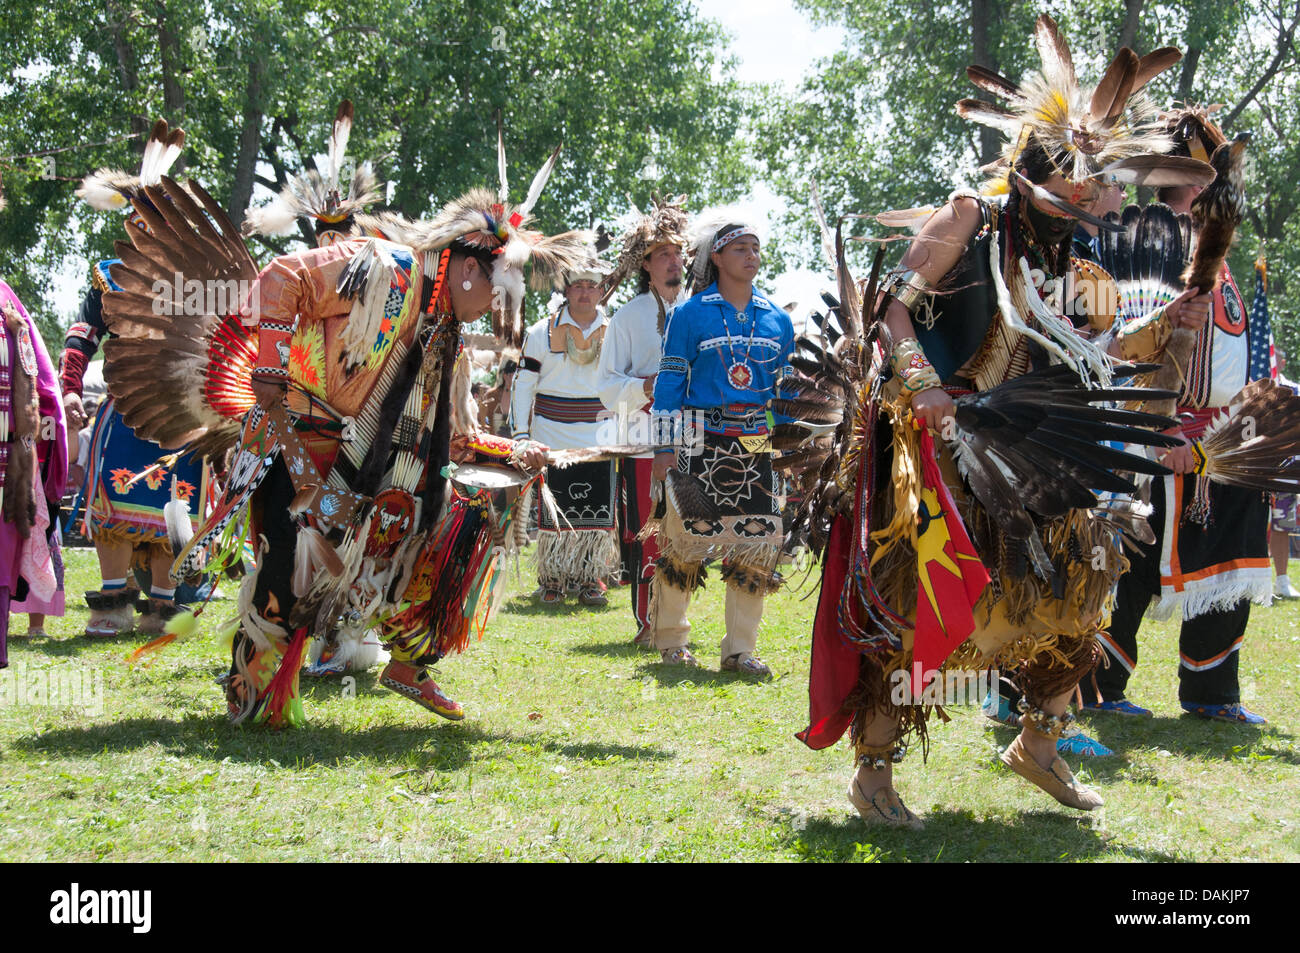 La fière nation mohawk vivant dans la communauté autochtone de Kahnawake situé sur la rive sud du fleuve Saint-Laurent, au Québec Canada célèbre son Pow-Wow annuel avec des danses traditionnelles et la musique de tambour -Juillet 2013 13-14 Banque D'Images